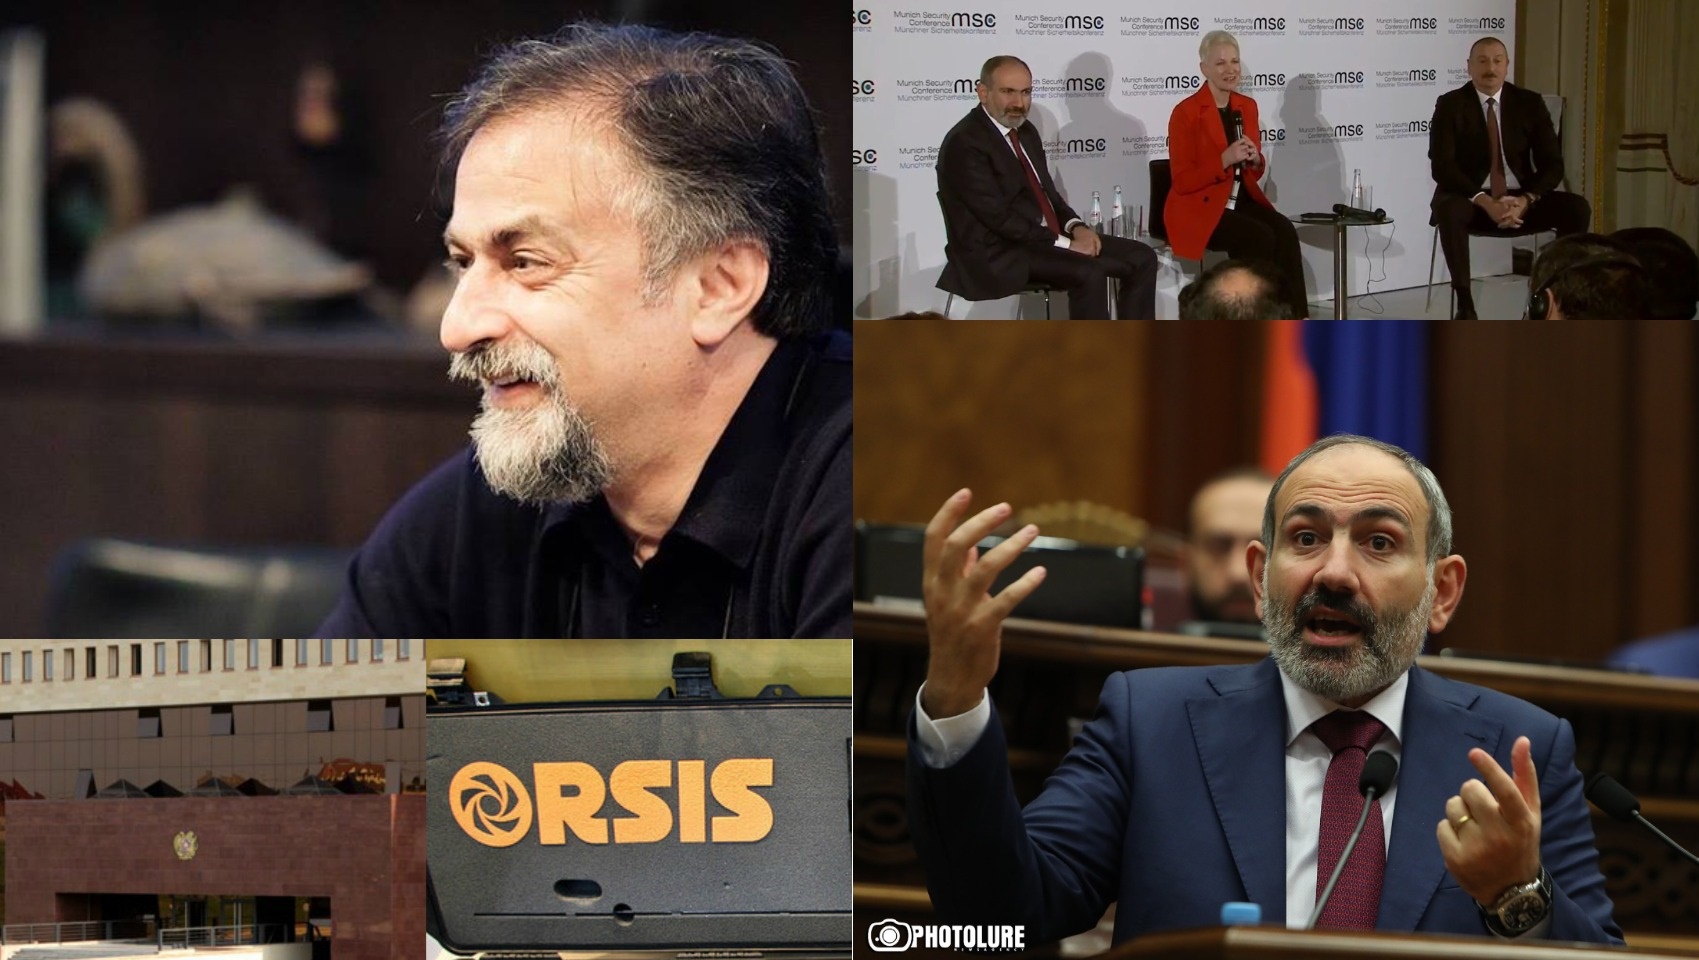 Арест Вермишяна, скандал вокруг ORSIS и встреча Пашинян-Алиев в Мюнхене: Армения за неделю